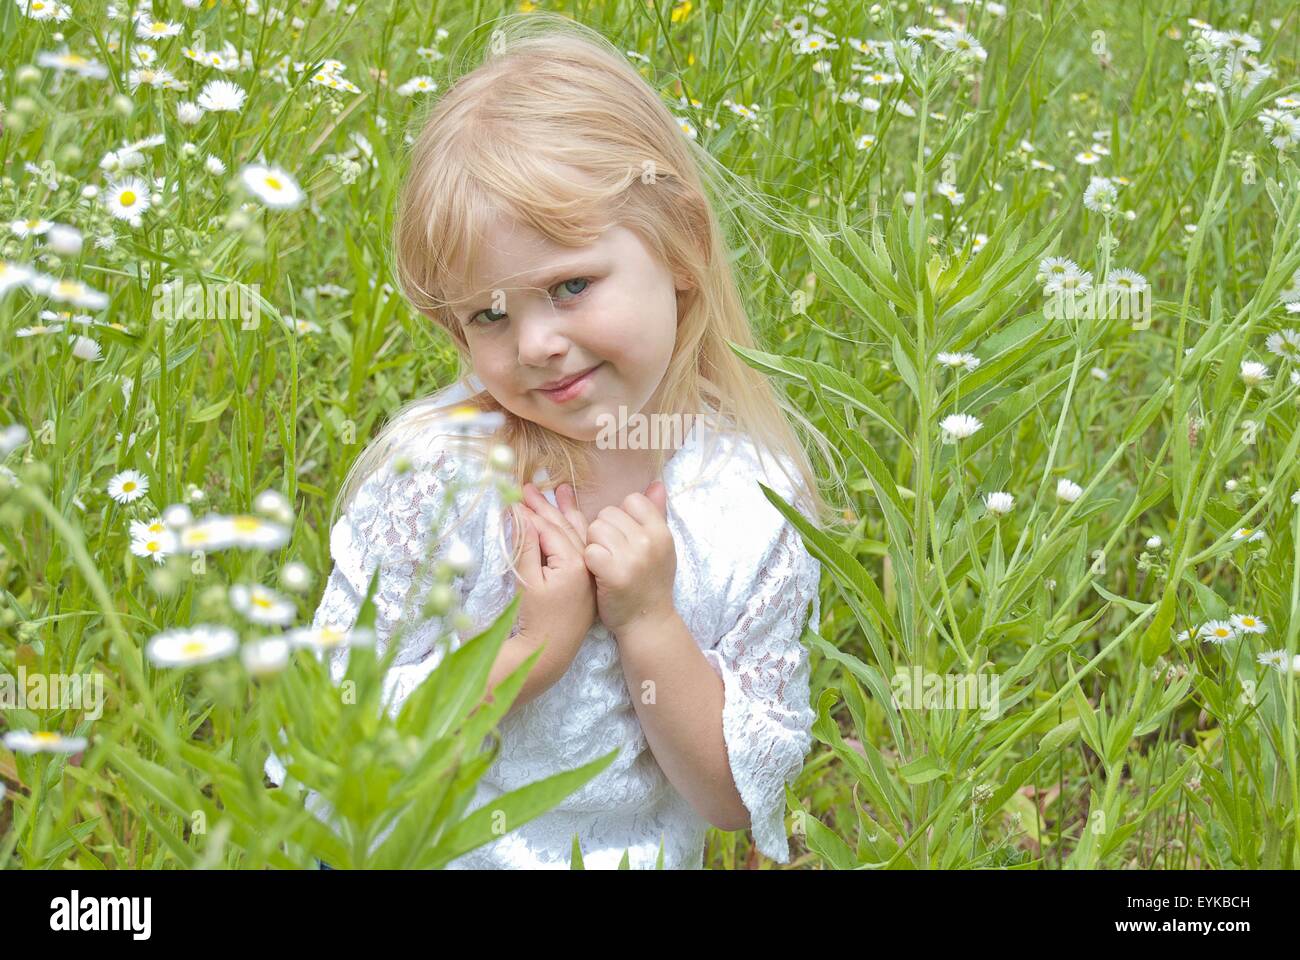 Kleines blondes Mädchen in einem Feld von wilden Gänseblümchen lächelnd. Stockfoto